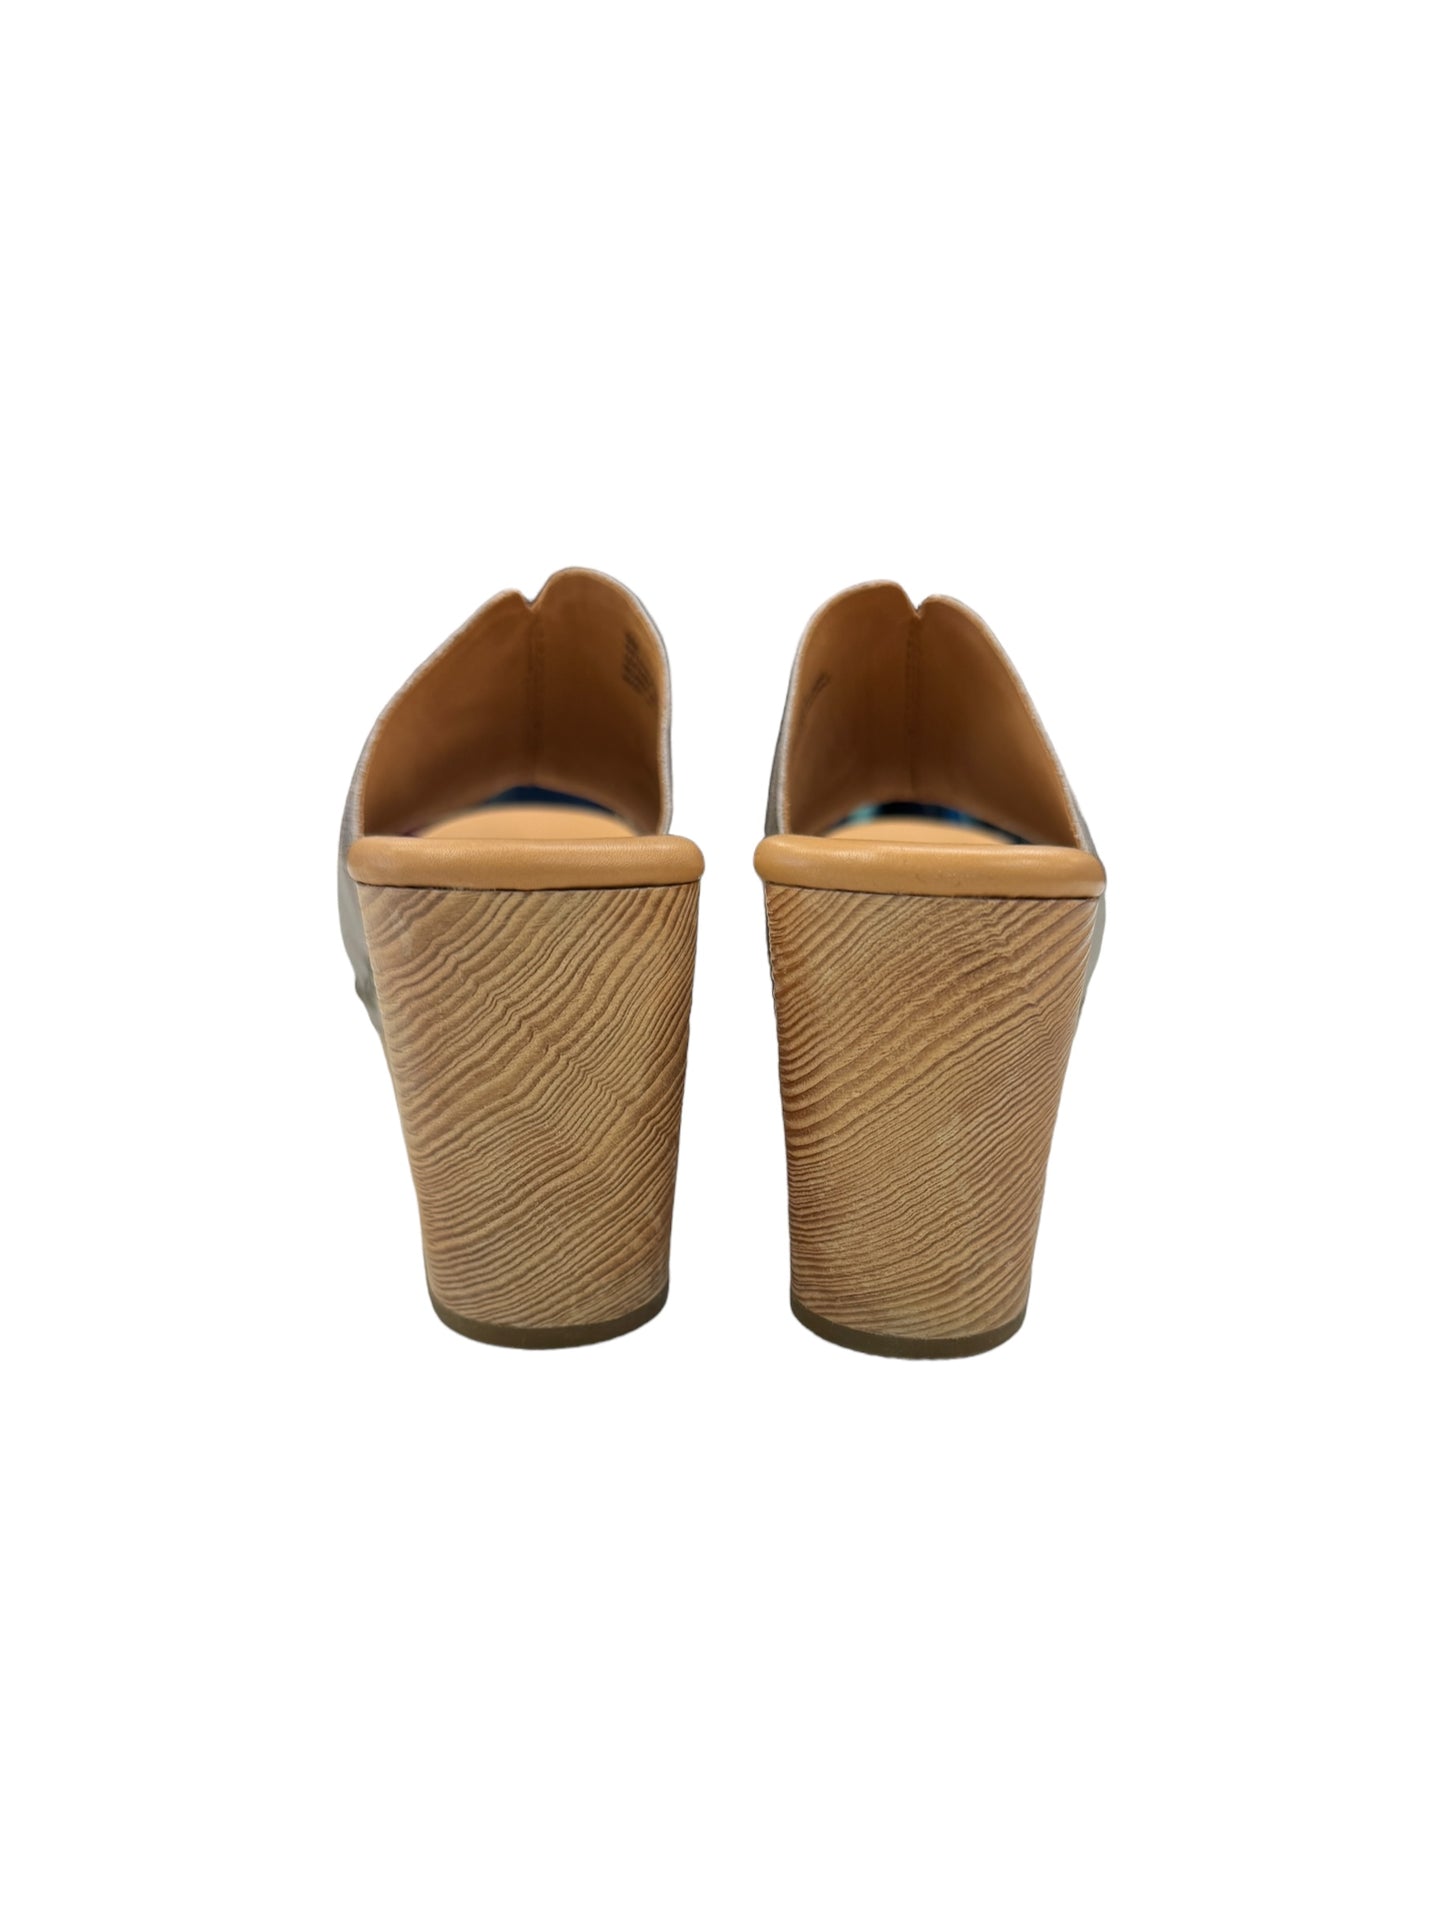 Sandals Heels Platform By Kork Ease  Size: 6